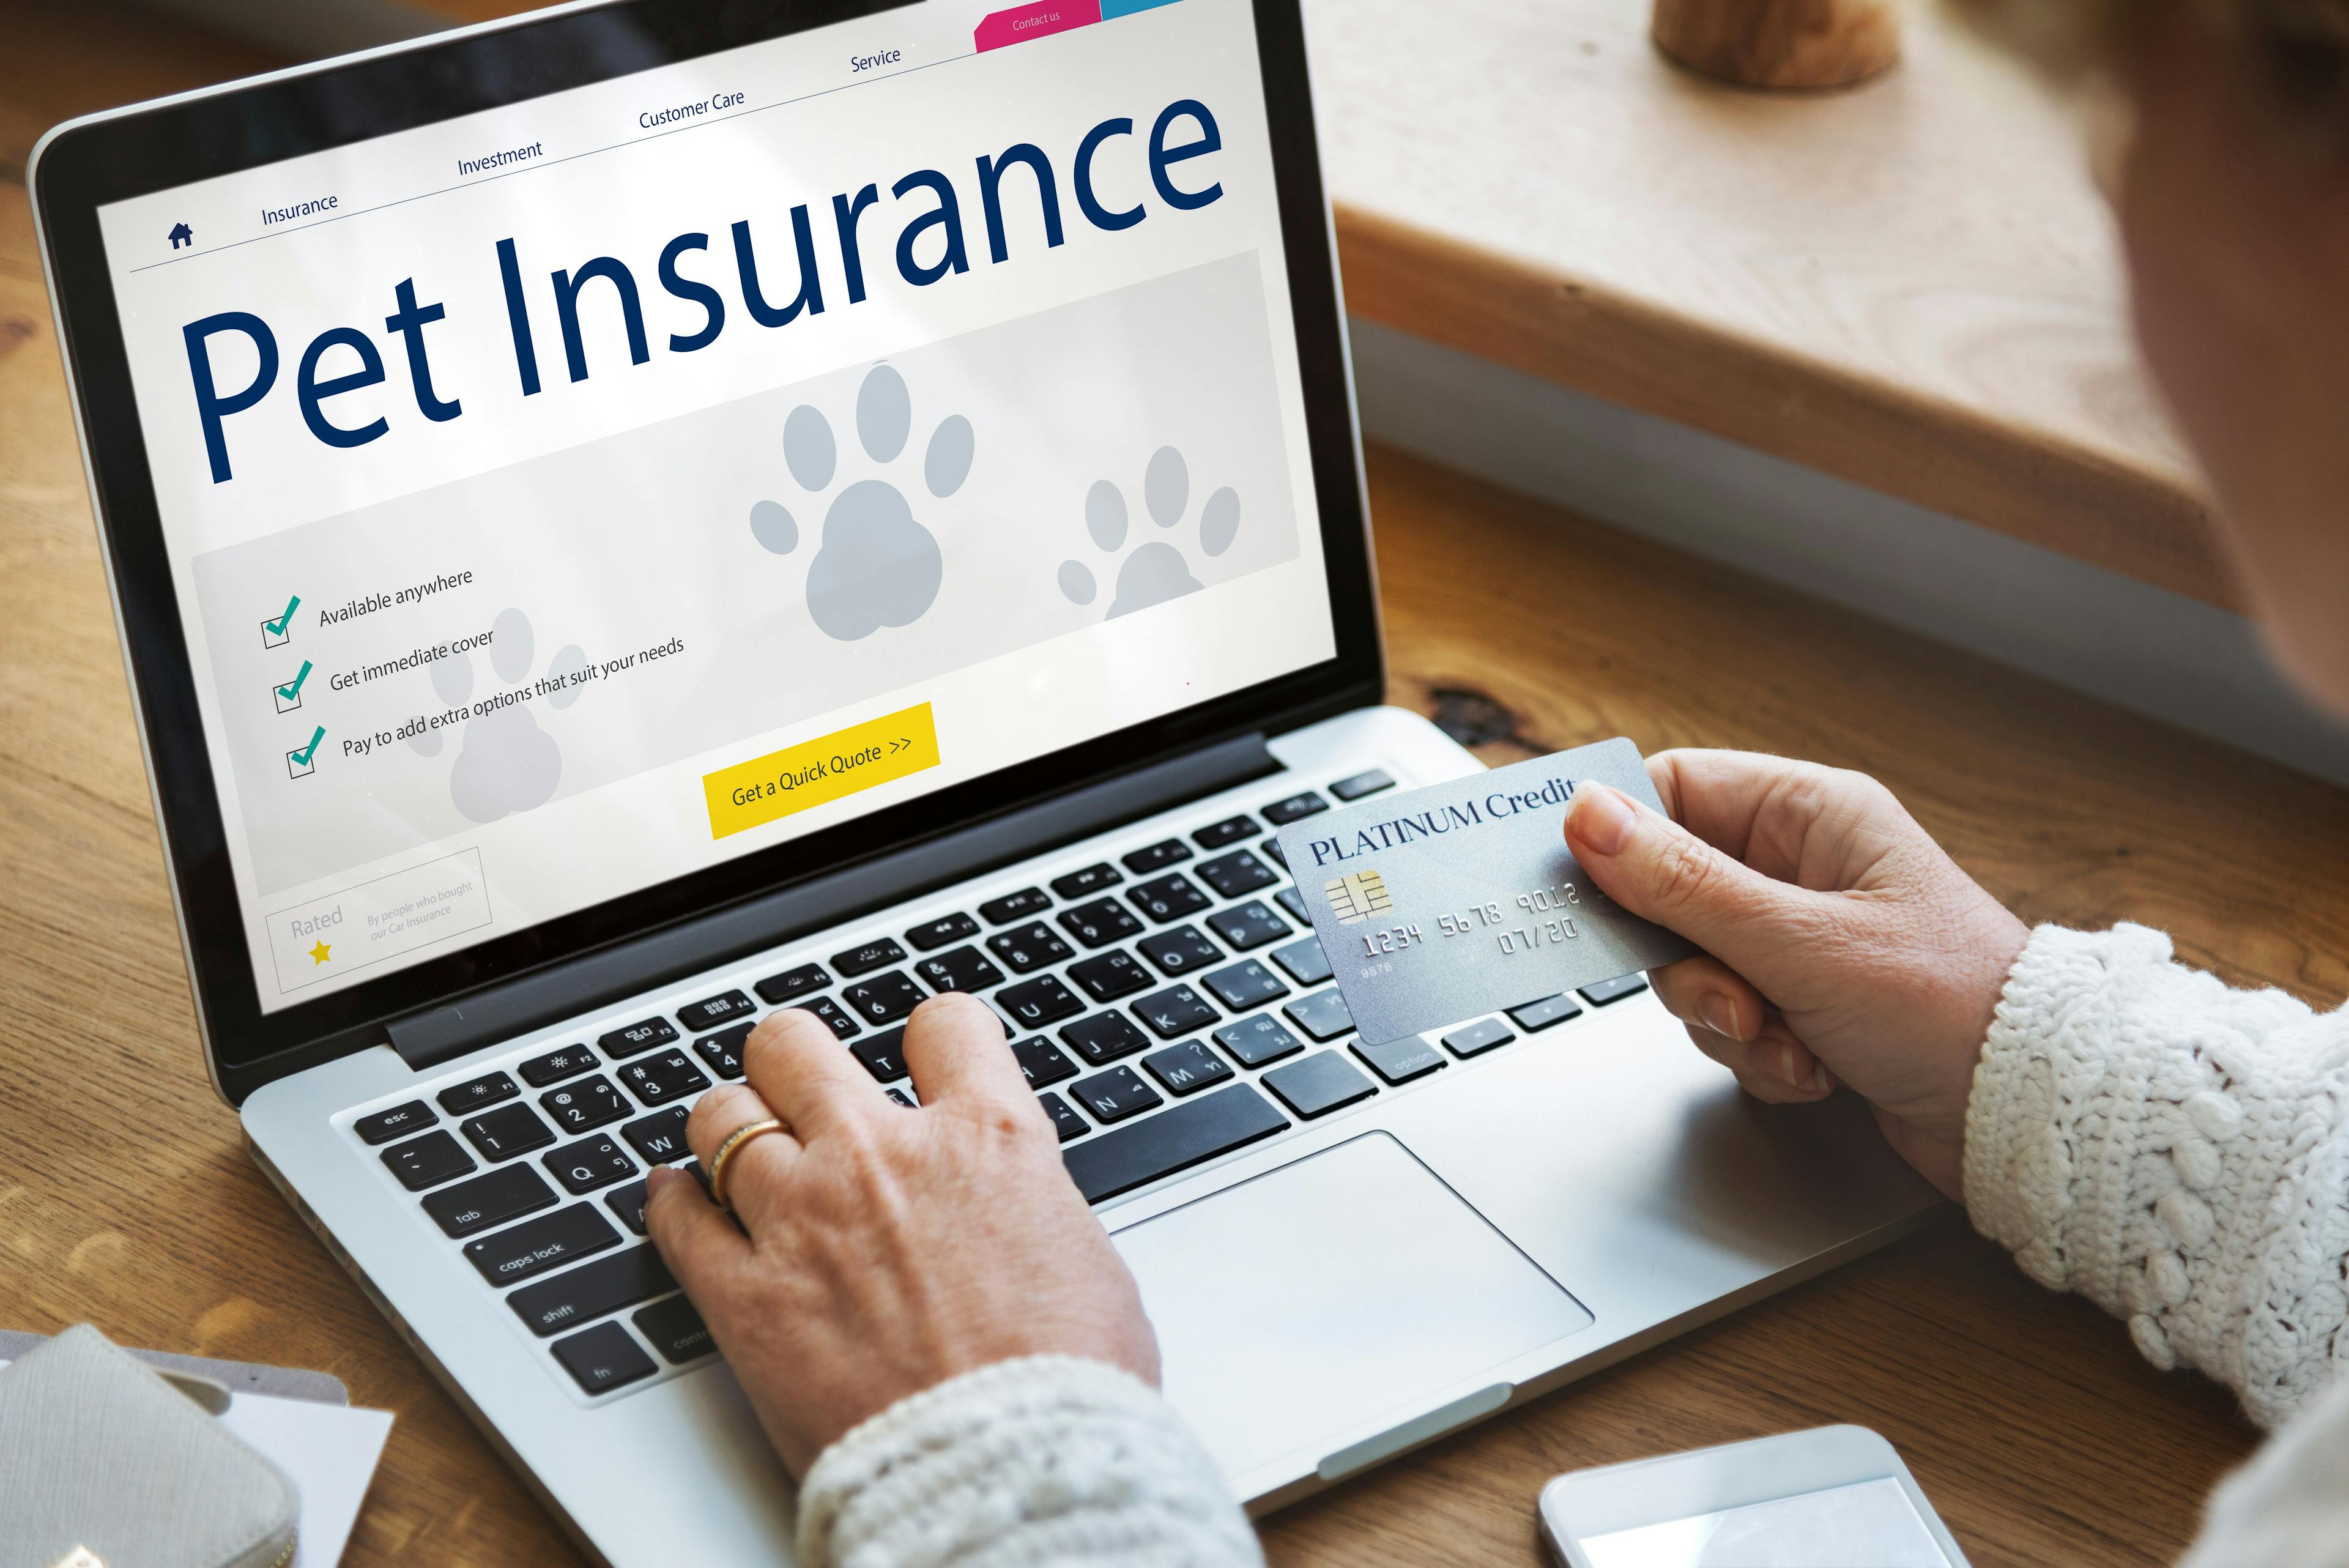 Chewy announces CarePlus pet insurance expansion 